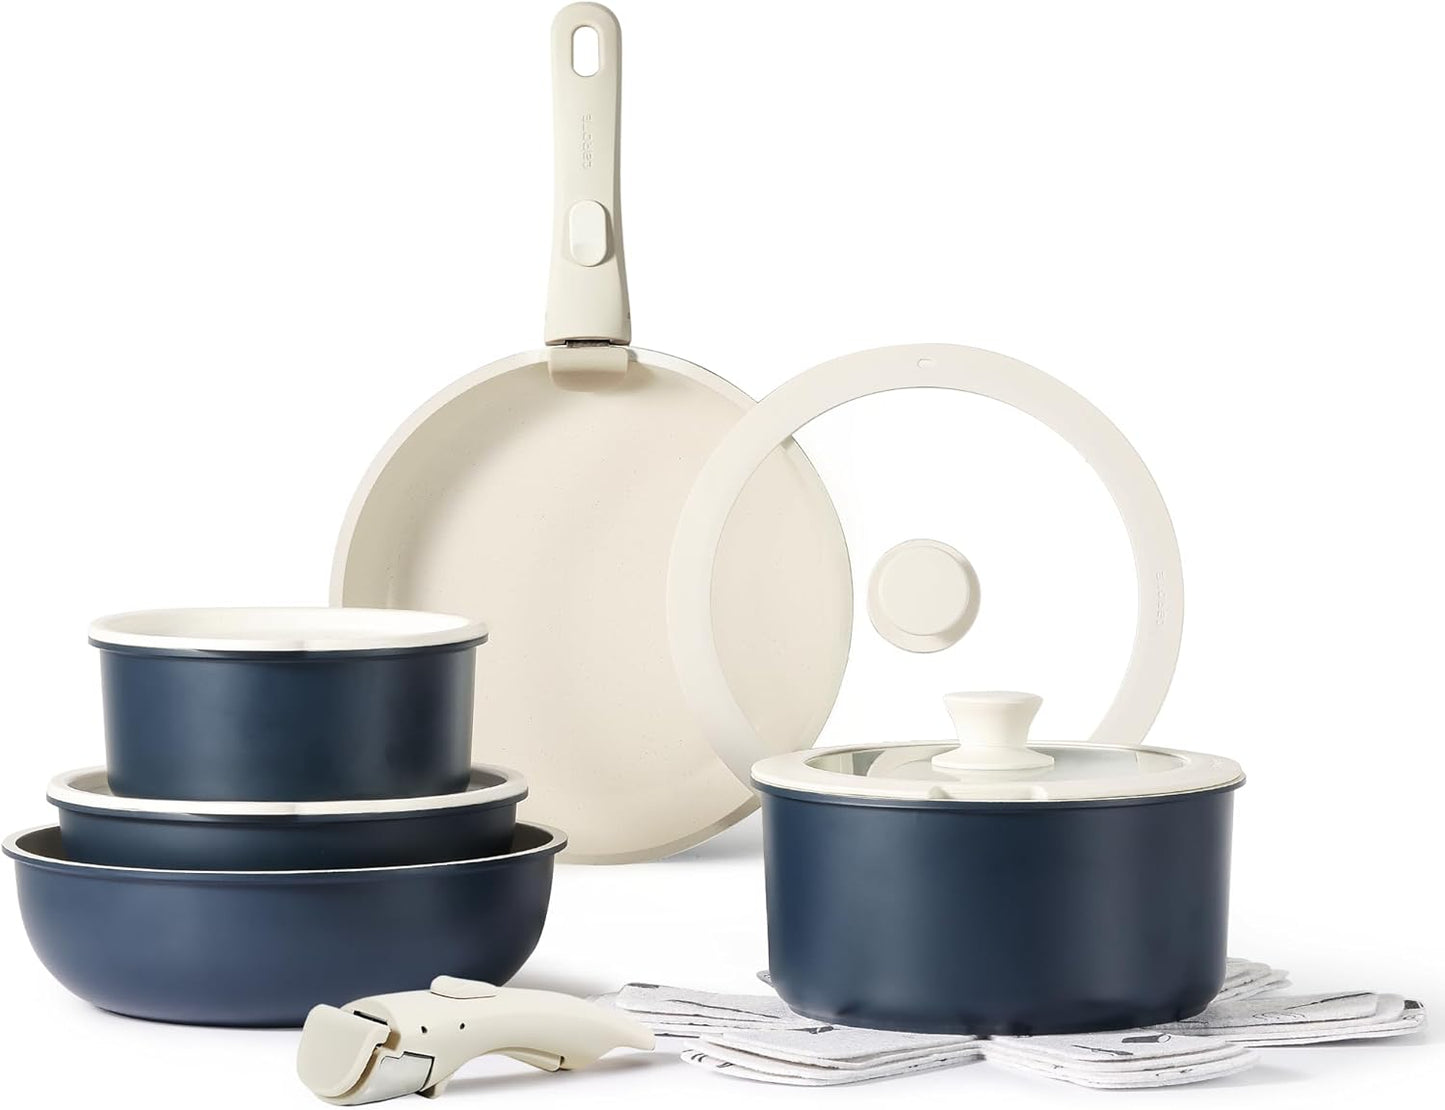 CAROTE 15pcs Pots and Pans Set, Nonstick Cookware Set Detachable Handle, Induction Kitchen Cookware Sets Non Stick with Removable Handle, RV Cookware Set, Oven Safe, Taupe